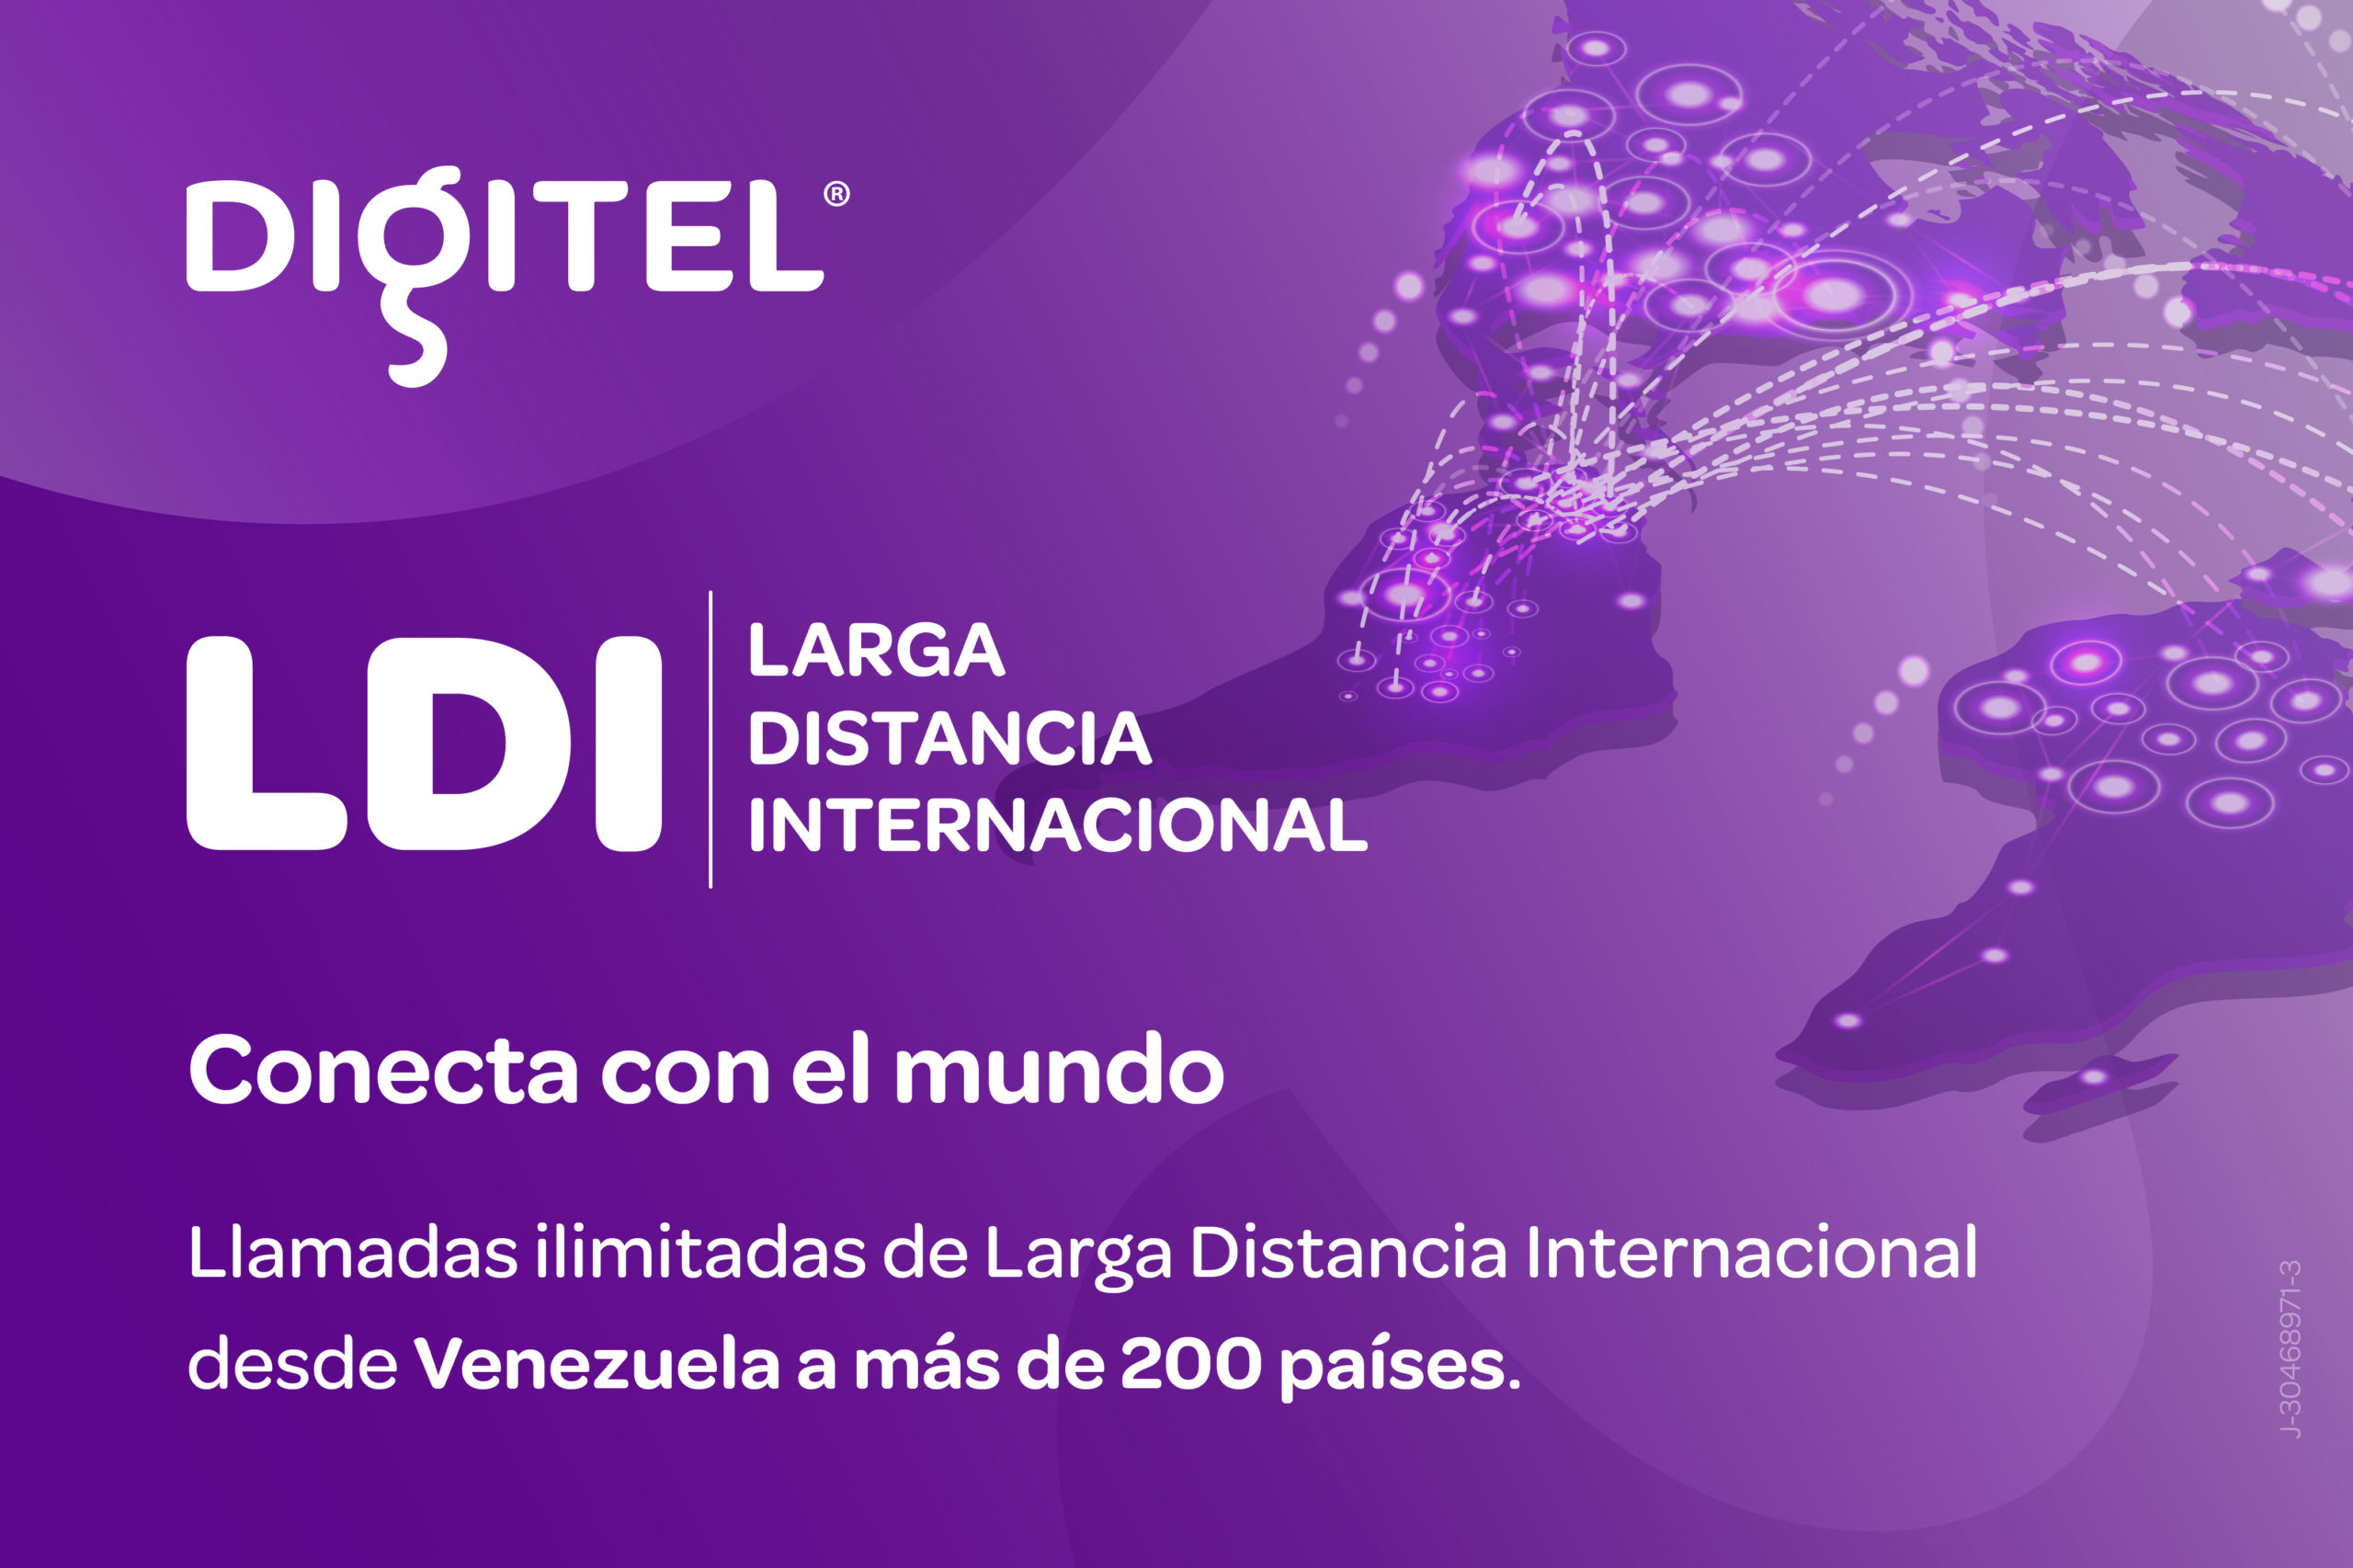 Digitel ofrece el nuevo servicio LDI para llamadas de larga distancia internacional